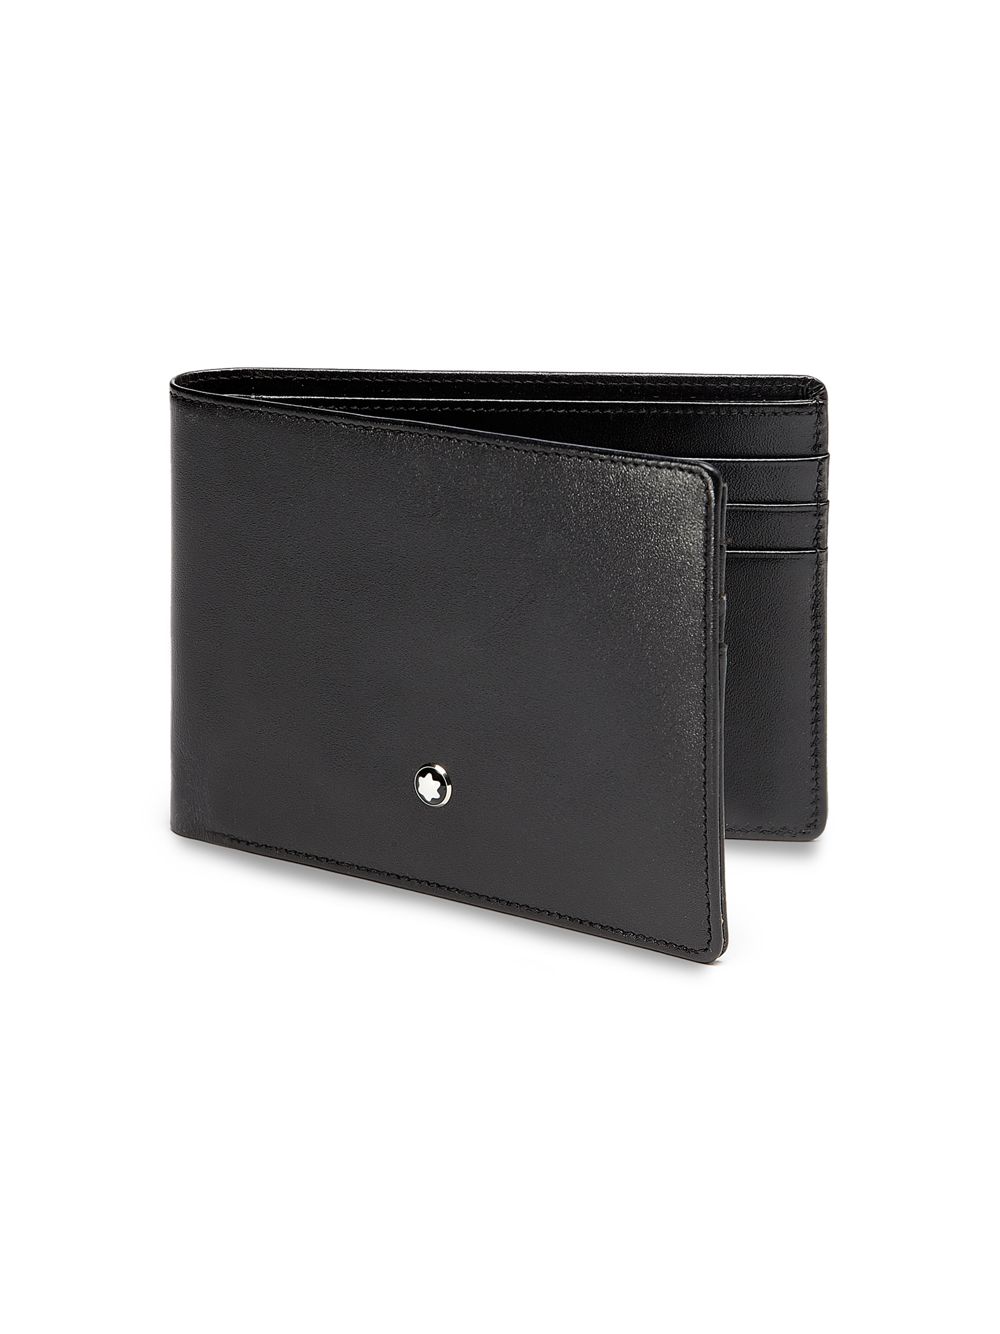 Бумажник Meisterstück 6cc Montblanc, черный портмоне обложки montblanc 00124190 бумажник